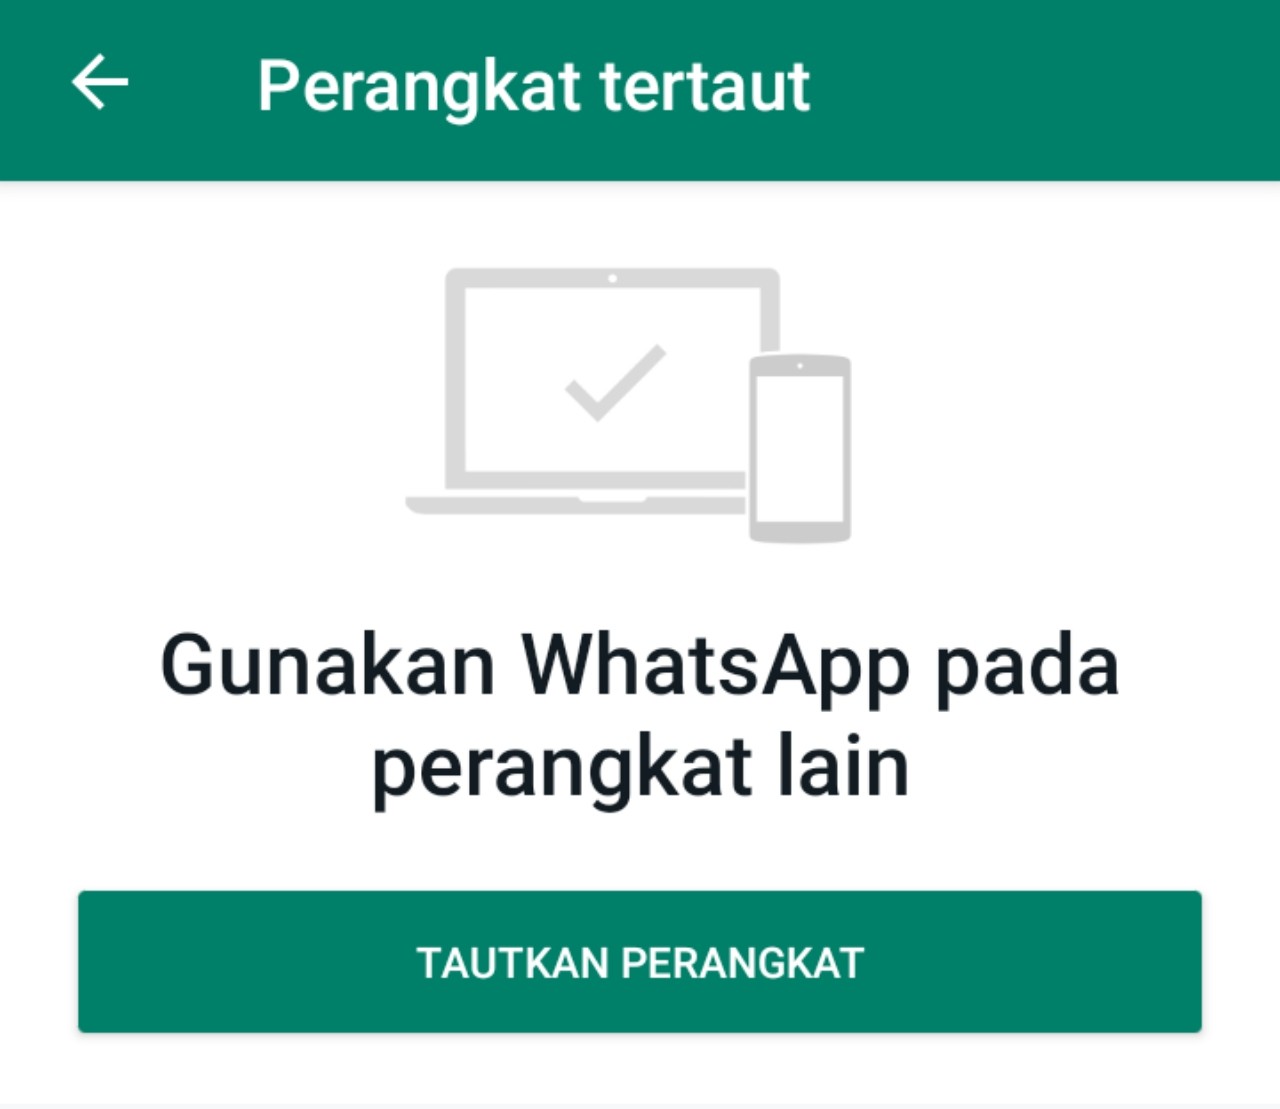 5 Langkah Cara Menyadap No Whatsapp Pacar Tanpa Aplikasi Tambahan Gampang Banget